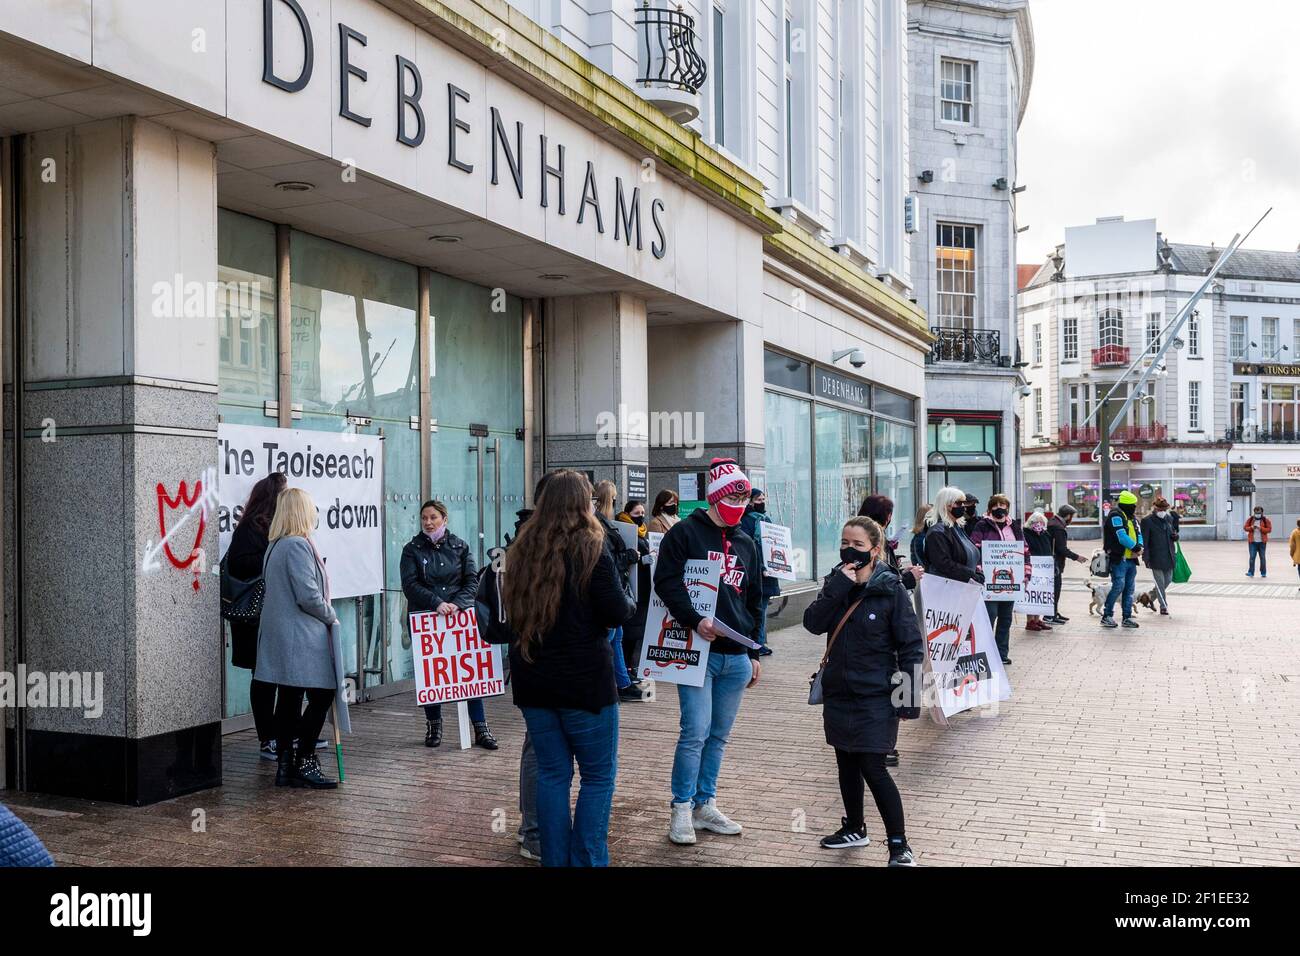 Cork, Irland. März 2021, 8th. Rund 25 ehemalige Debenhams und Arcadia-Anhänger versammelten sich heute Morgen vor dem Patrick Street Store, um am Internationalen Frauentag zu protestieren. Heute ist Tag 333 der Arbeiter Streikposten. Quelle: AG News/Alamy Live News Stockfoto